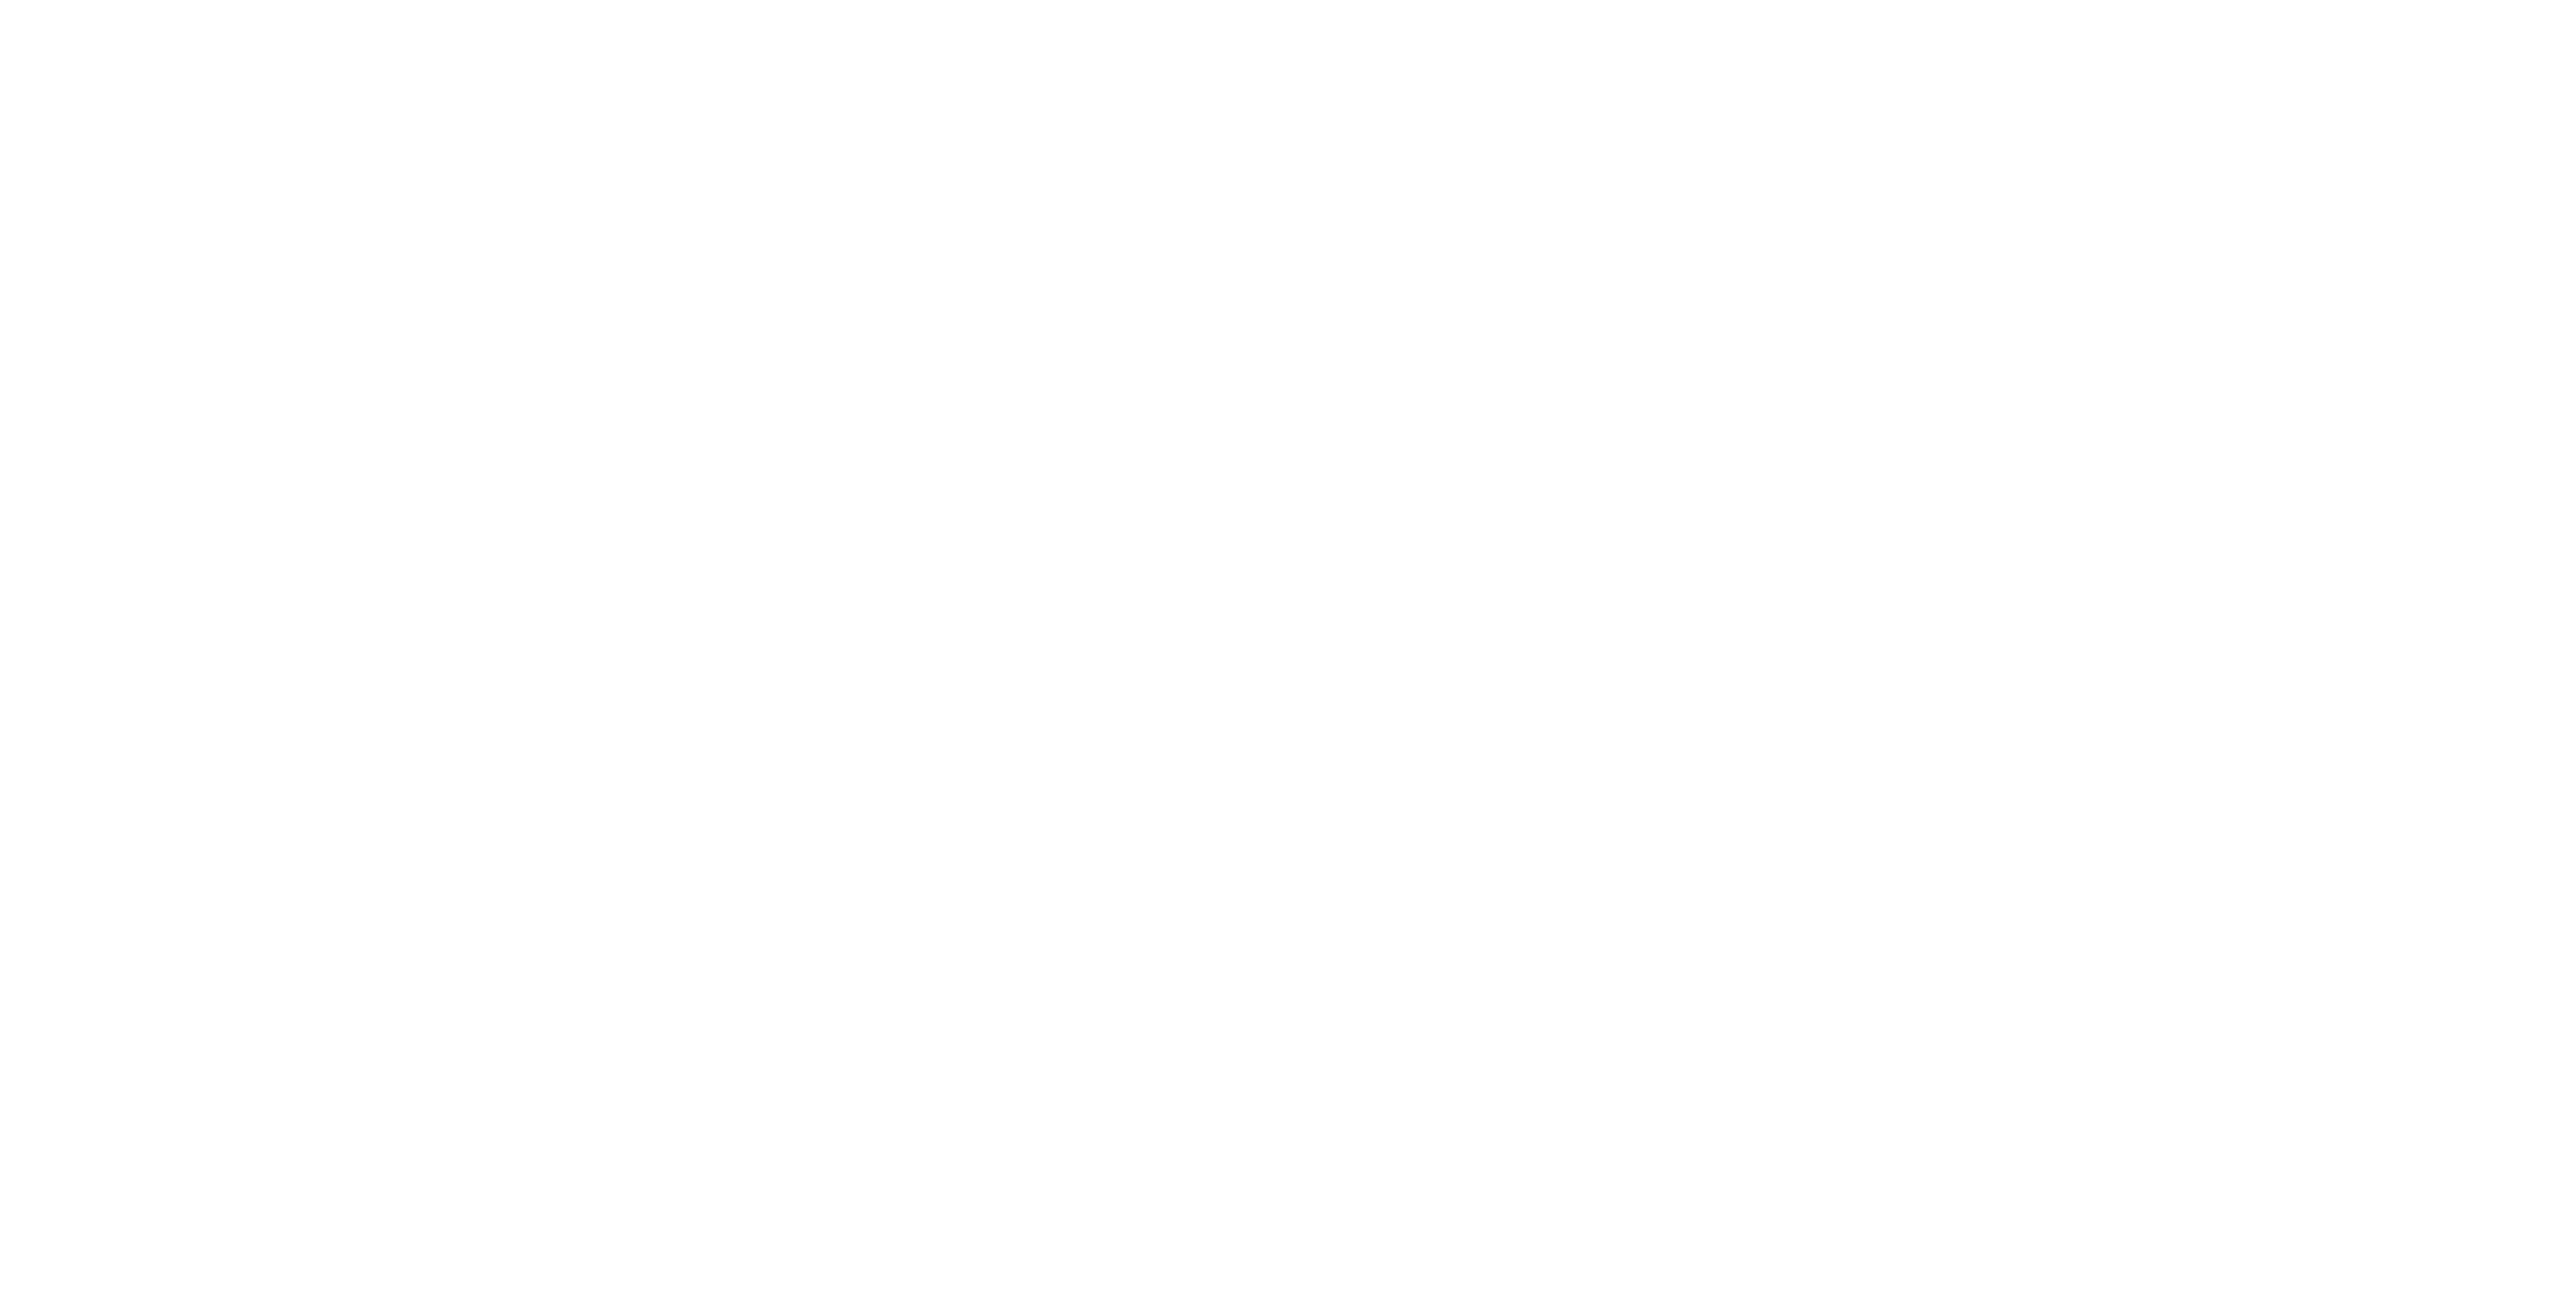 LEX logo white text